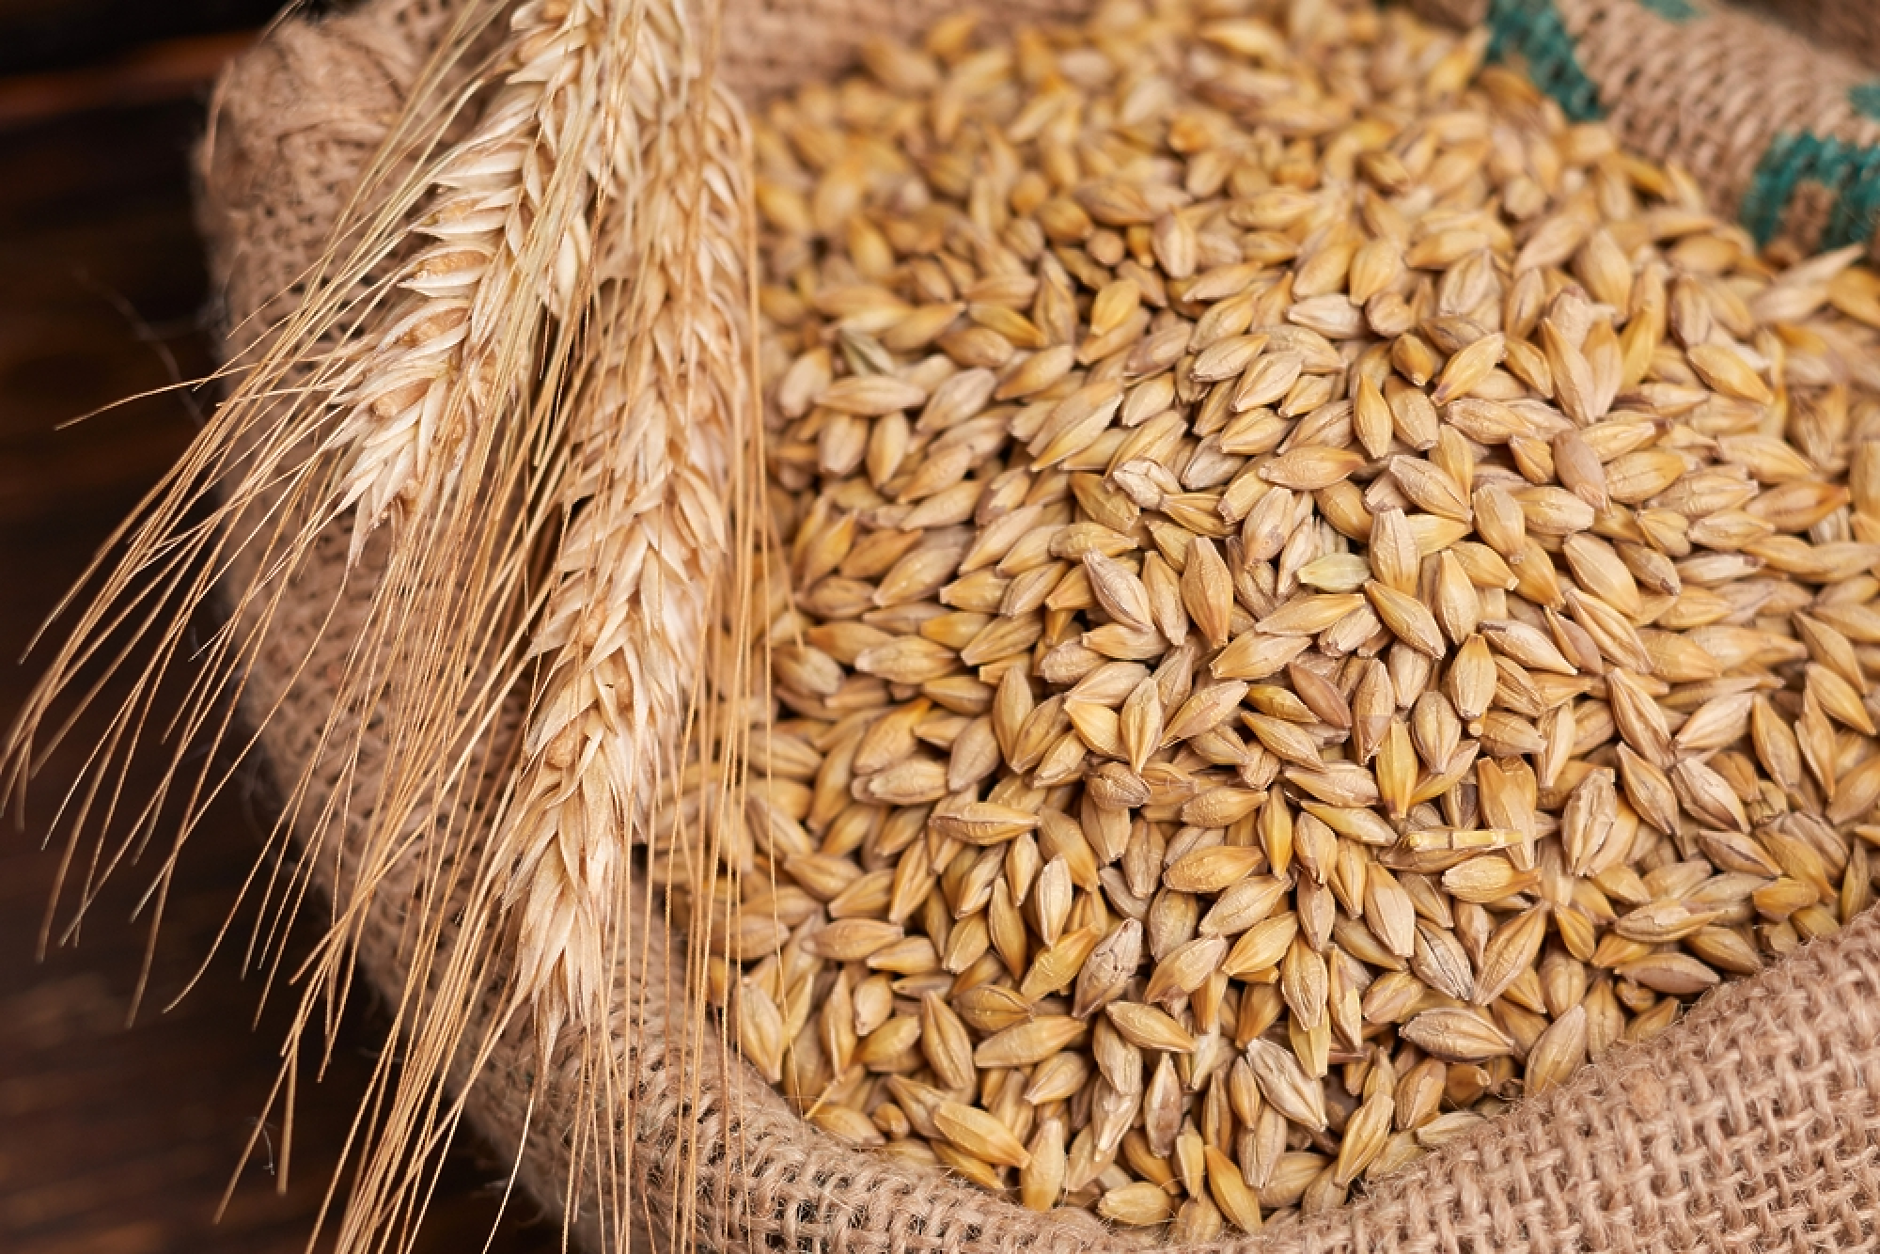 Промените в цените на основните зърнени стоки на световните борсови пазари и през тази седмица са минимални